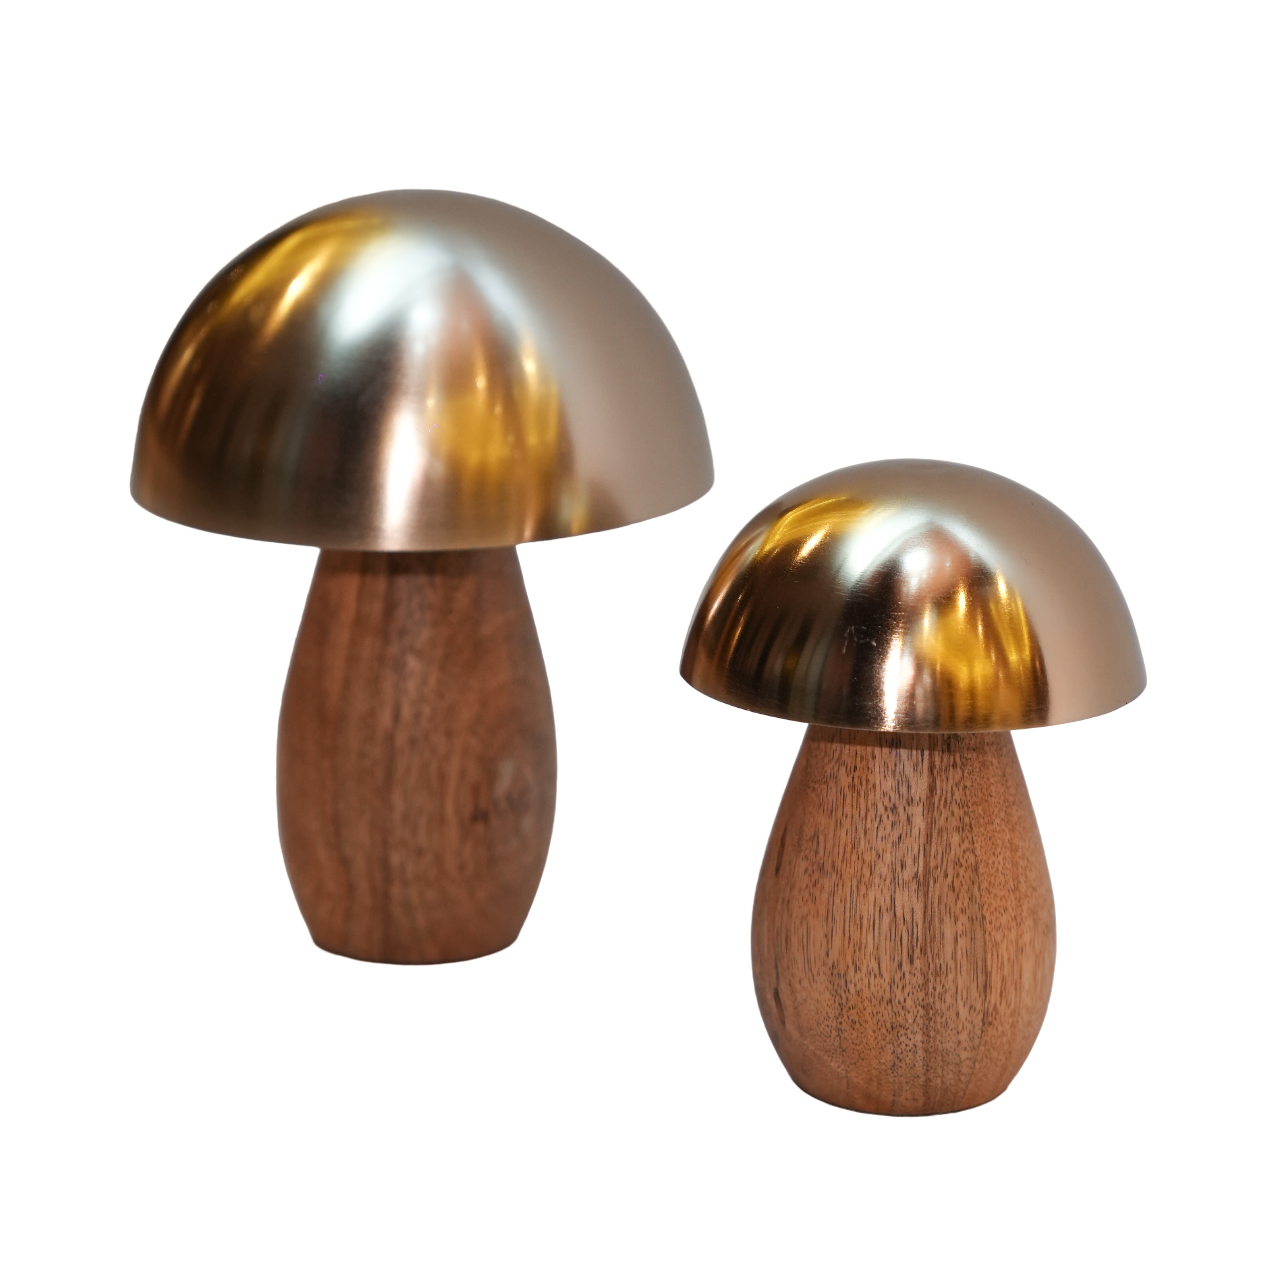 Mushroom Style Table Decor (Set of 2)